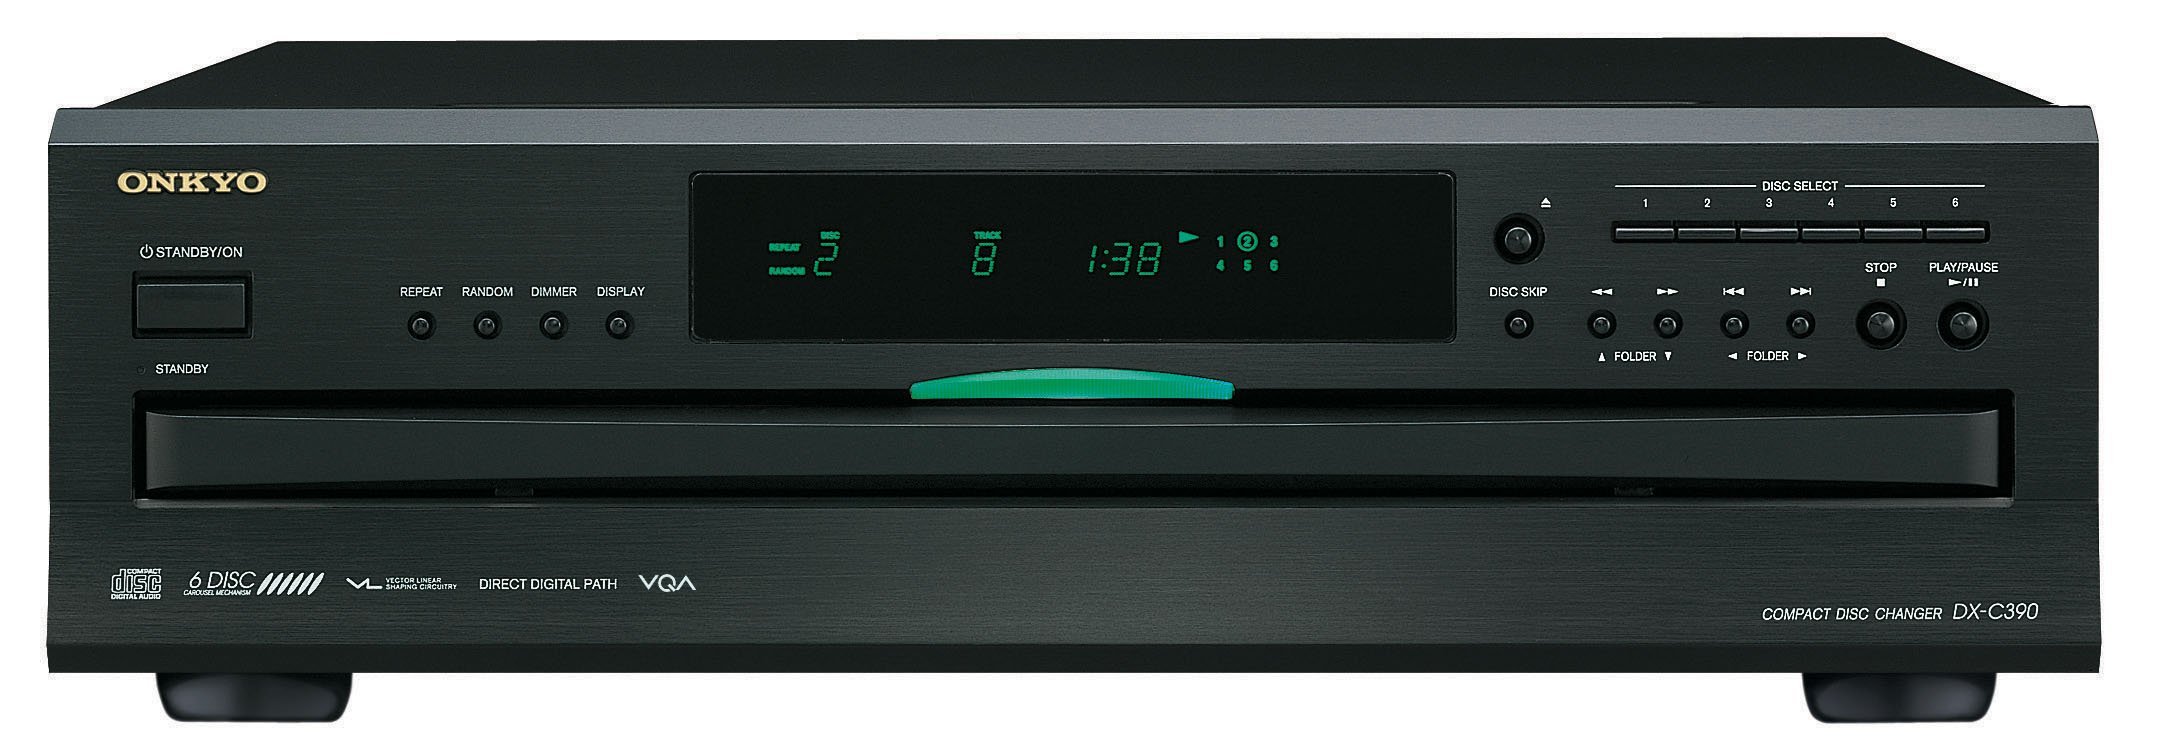 Onkyo DX-C390(S) 6-facher CD-Karussellwechsler, für die Wiedergabe von MP3 CDs und Audio CDs, High-End CD-Player mit innovativen Technologien, gebürstete Aluminium-Gehäusefront, schwarz